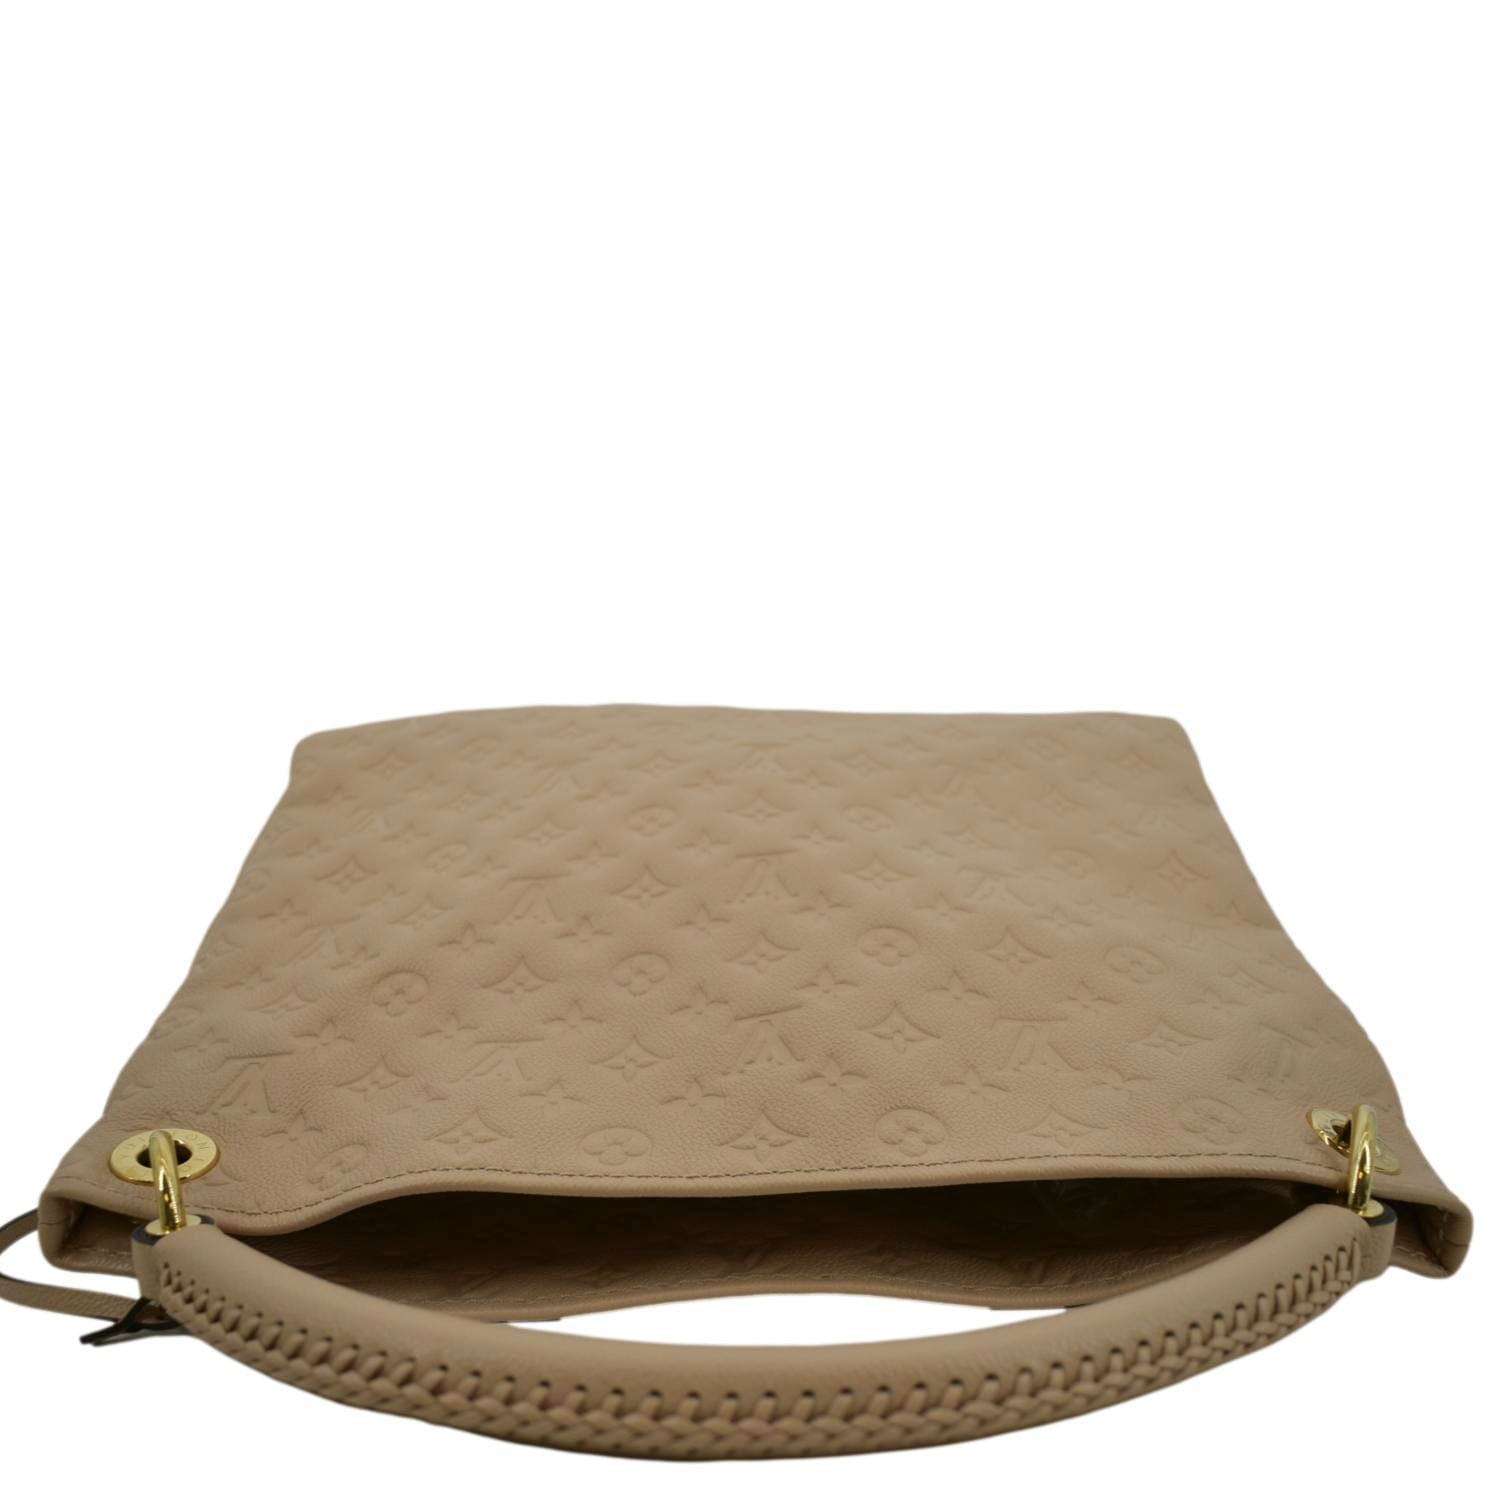 Louis Vuitton Monogram Empreinte Artsy GM - Brown Hobos, Handbags